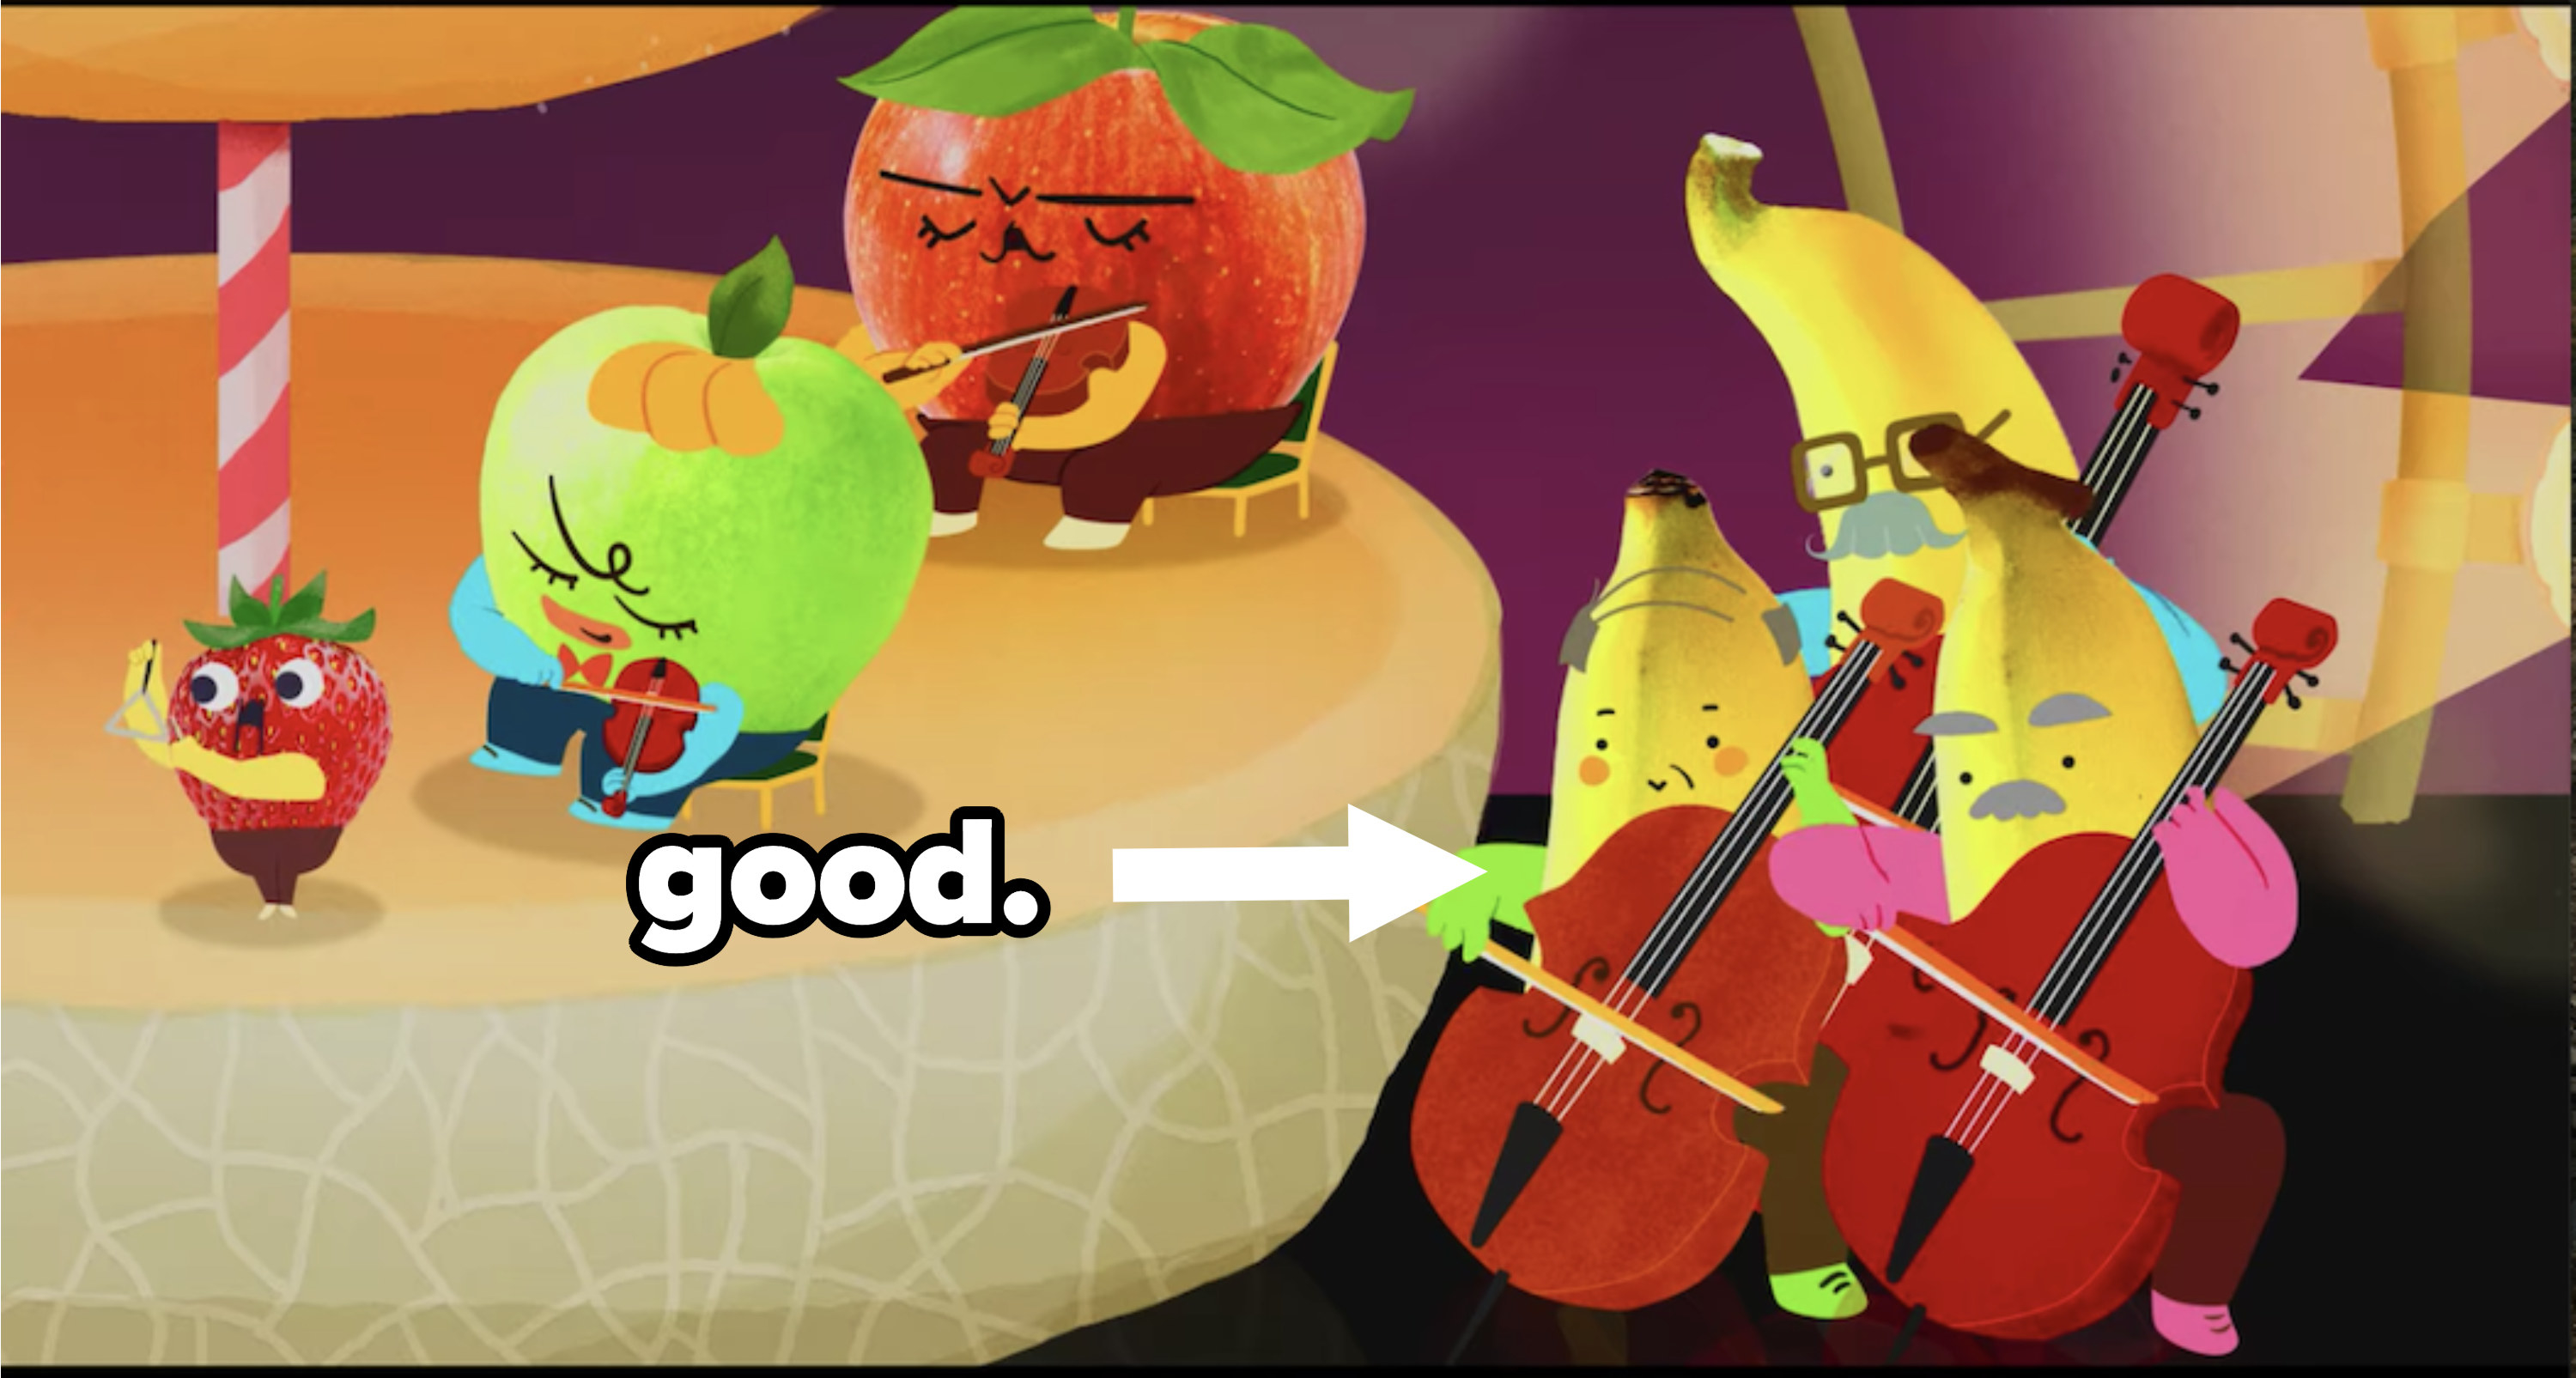 Cartoon bananas playing the cello